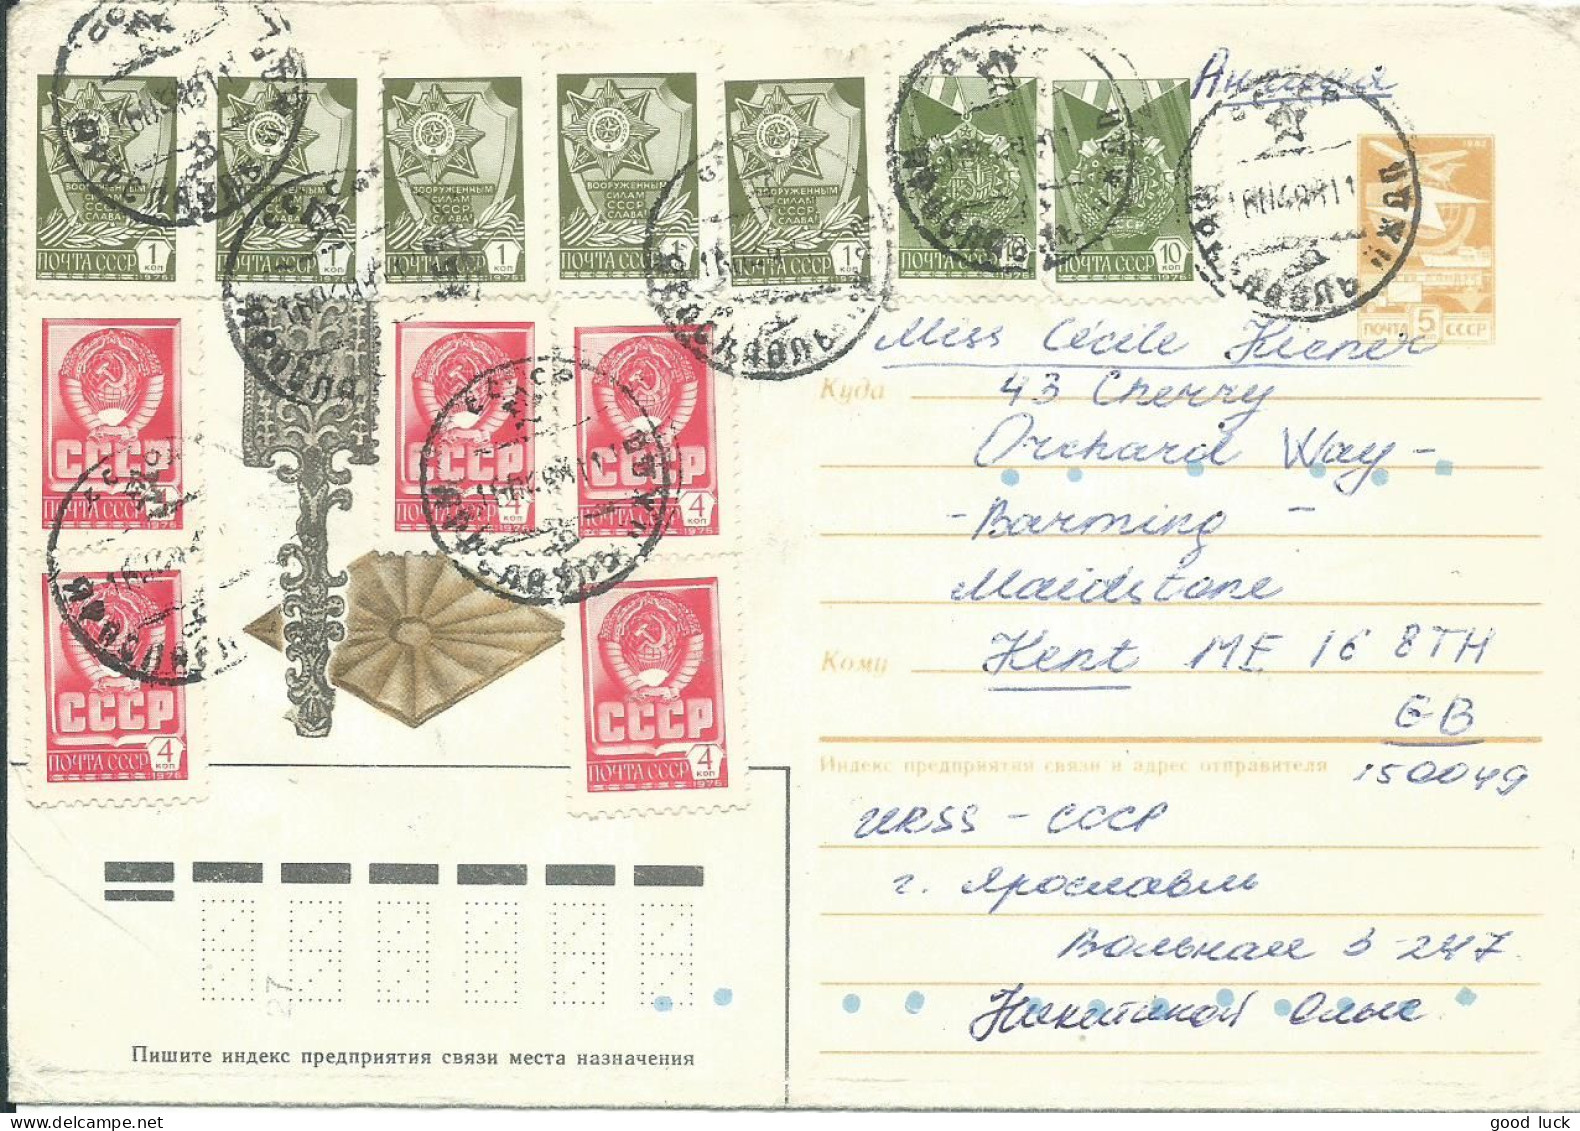 RUSSIE  LETTRE 50c POUR MAIDSTONE ( GRANDE BRETAGNE ) DE 1988 LETTRE COVER - Covers & Documents